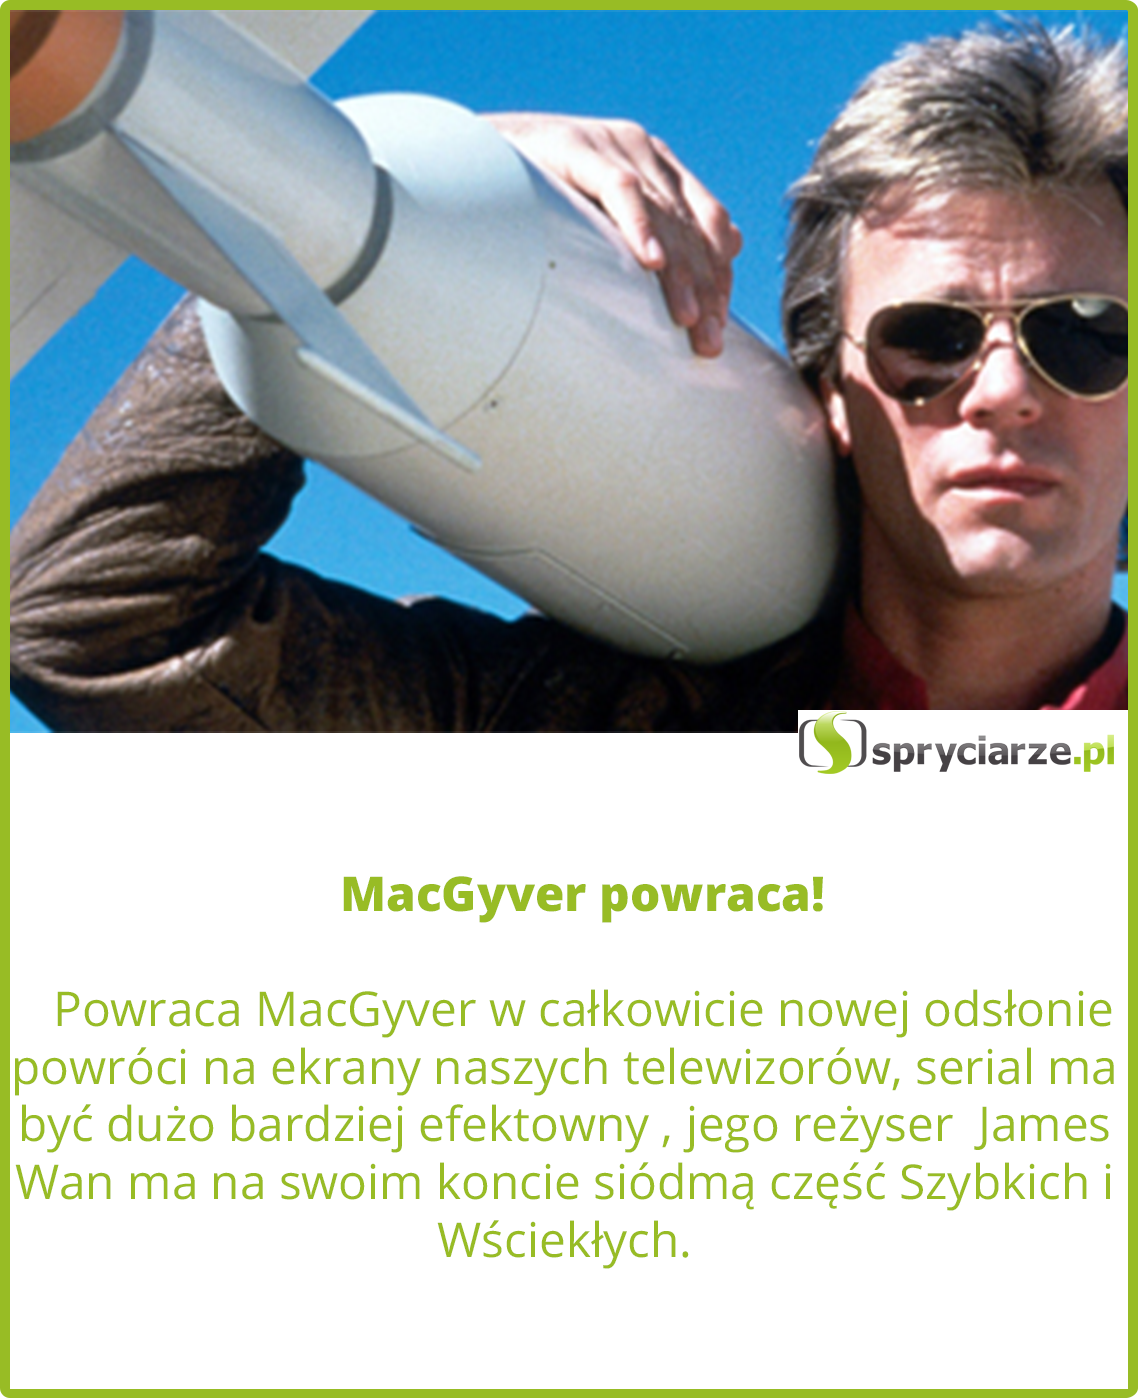 MacGyver powraca!